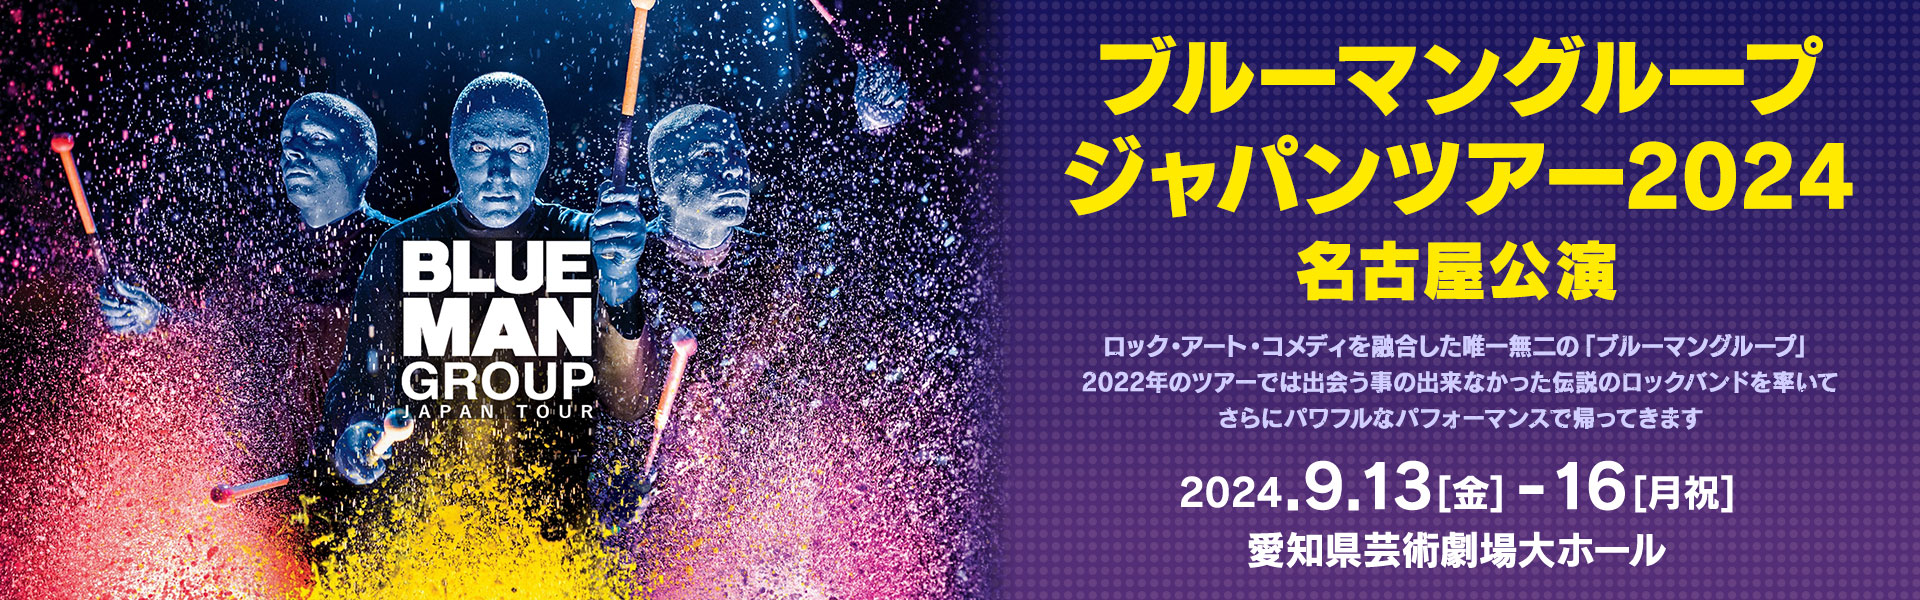 ブルーマングループジャパンツアー2024 名古屋公演